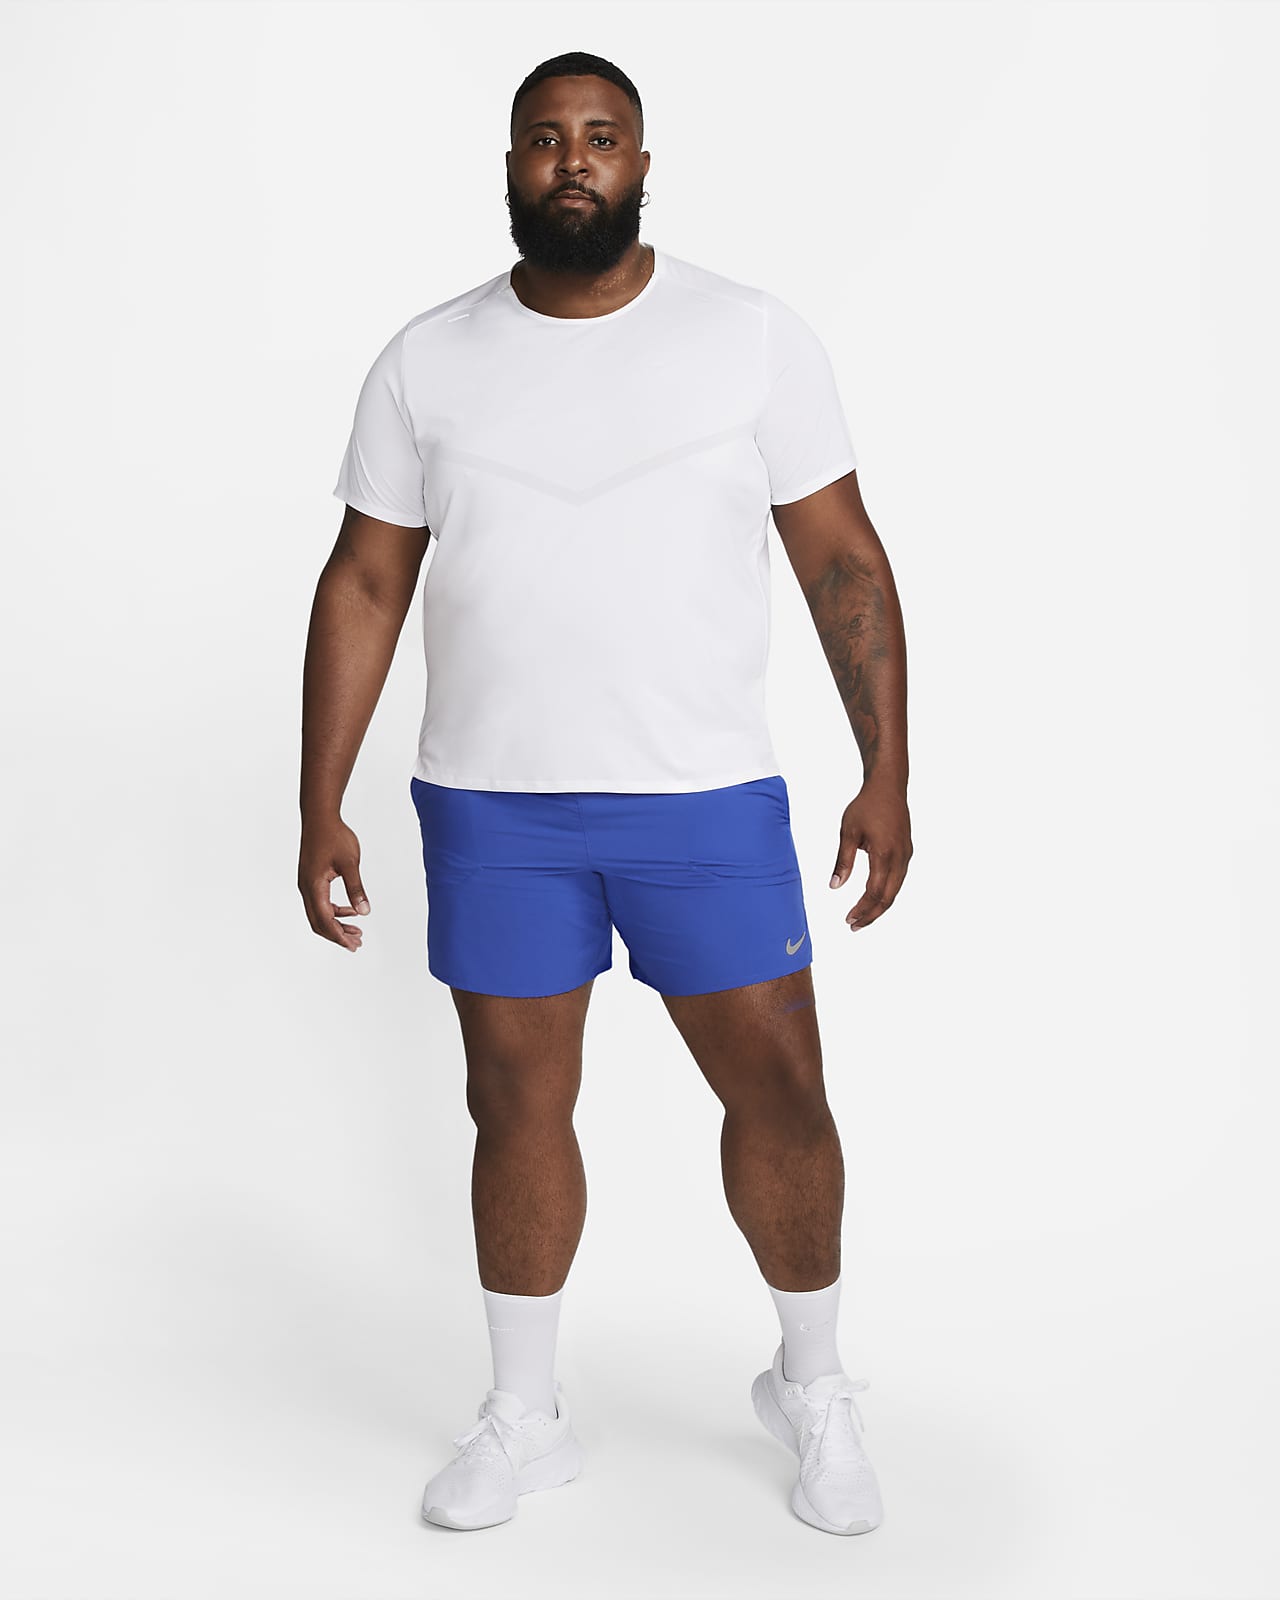 Men's | Nike Flex Stride 7 Short